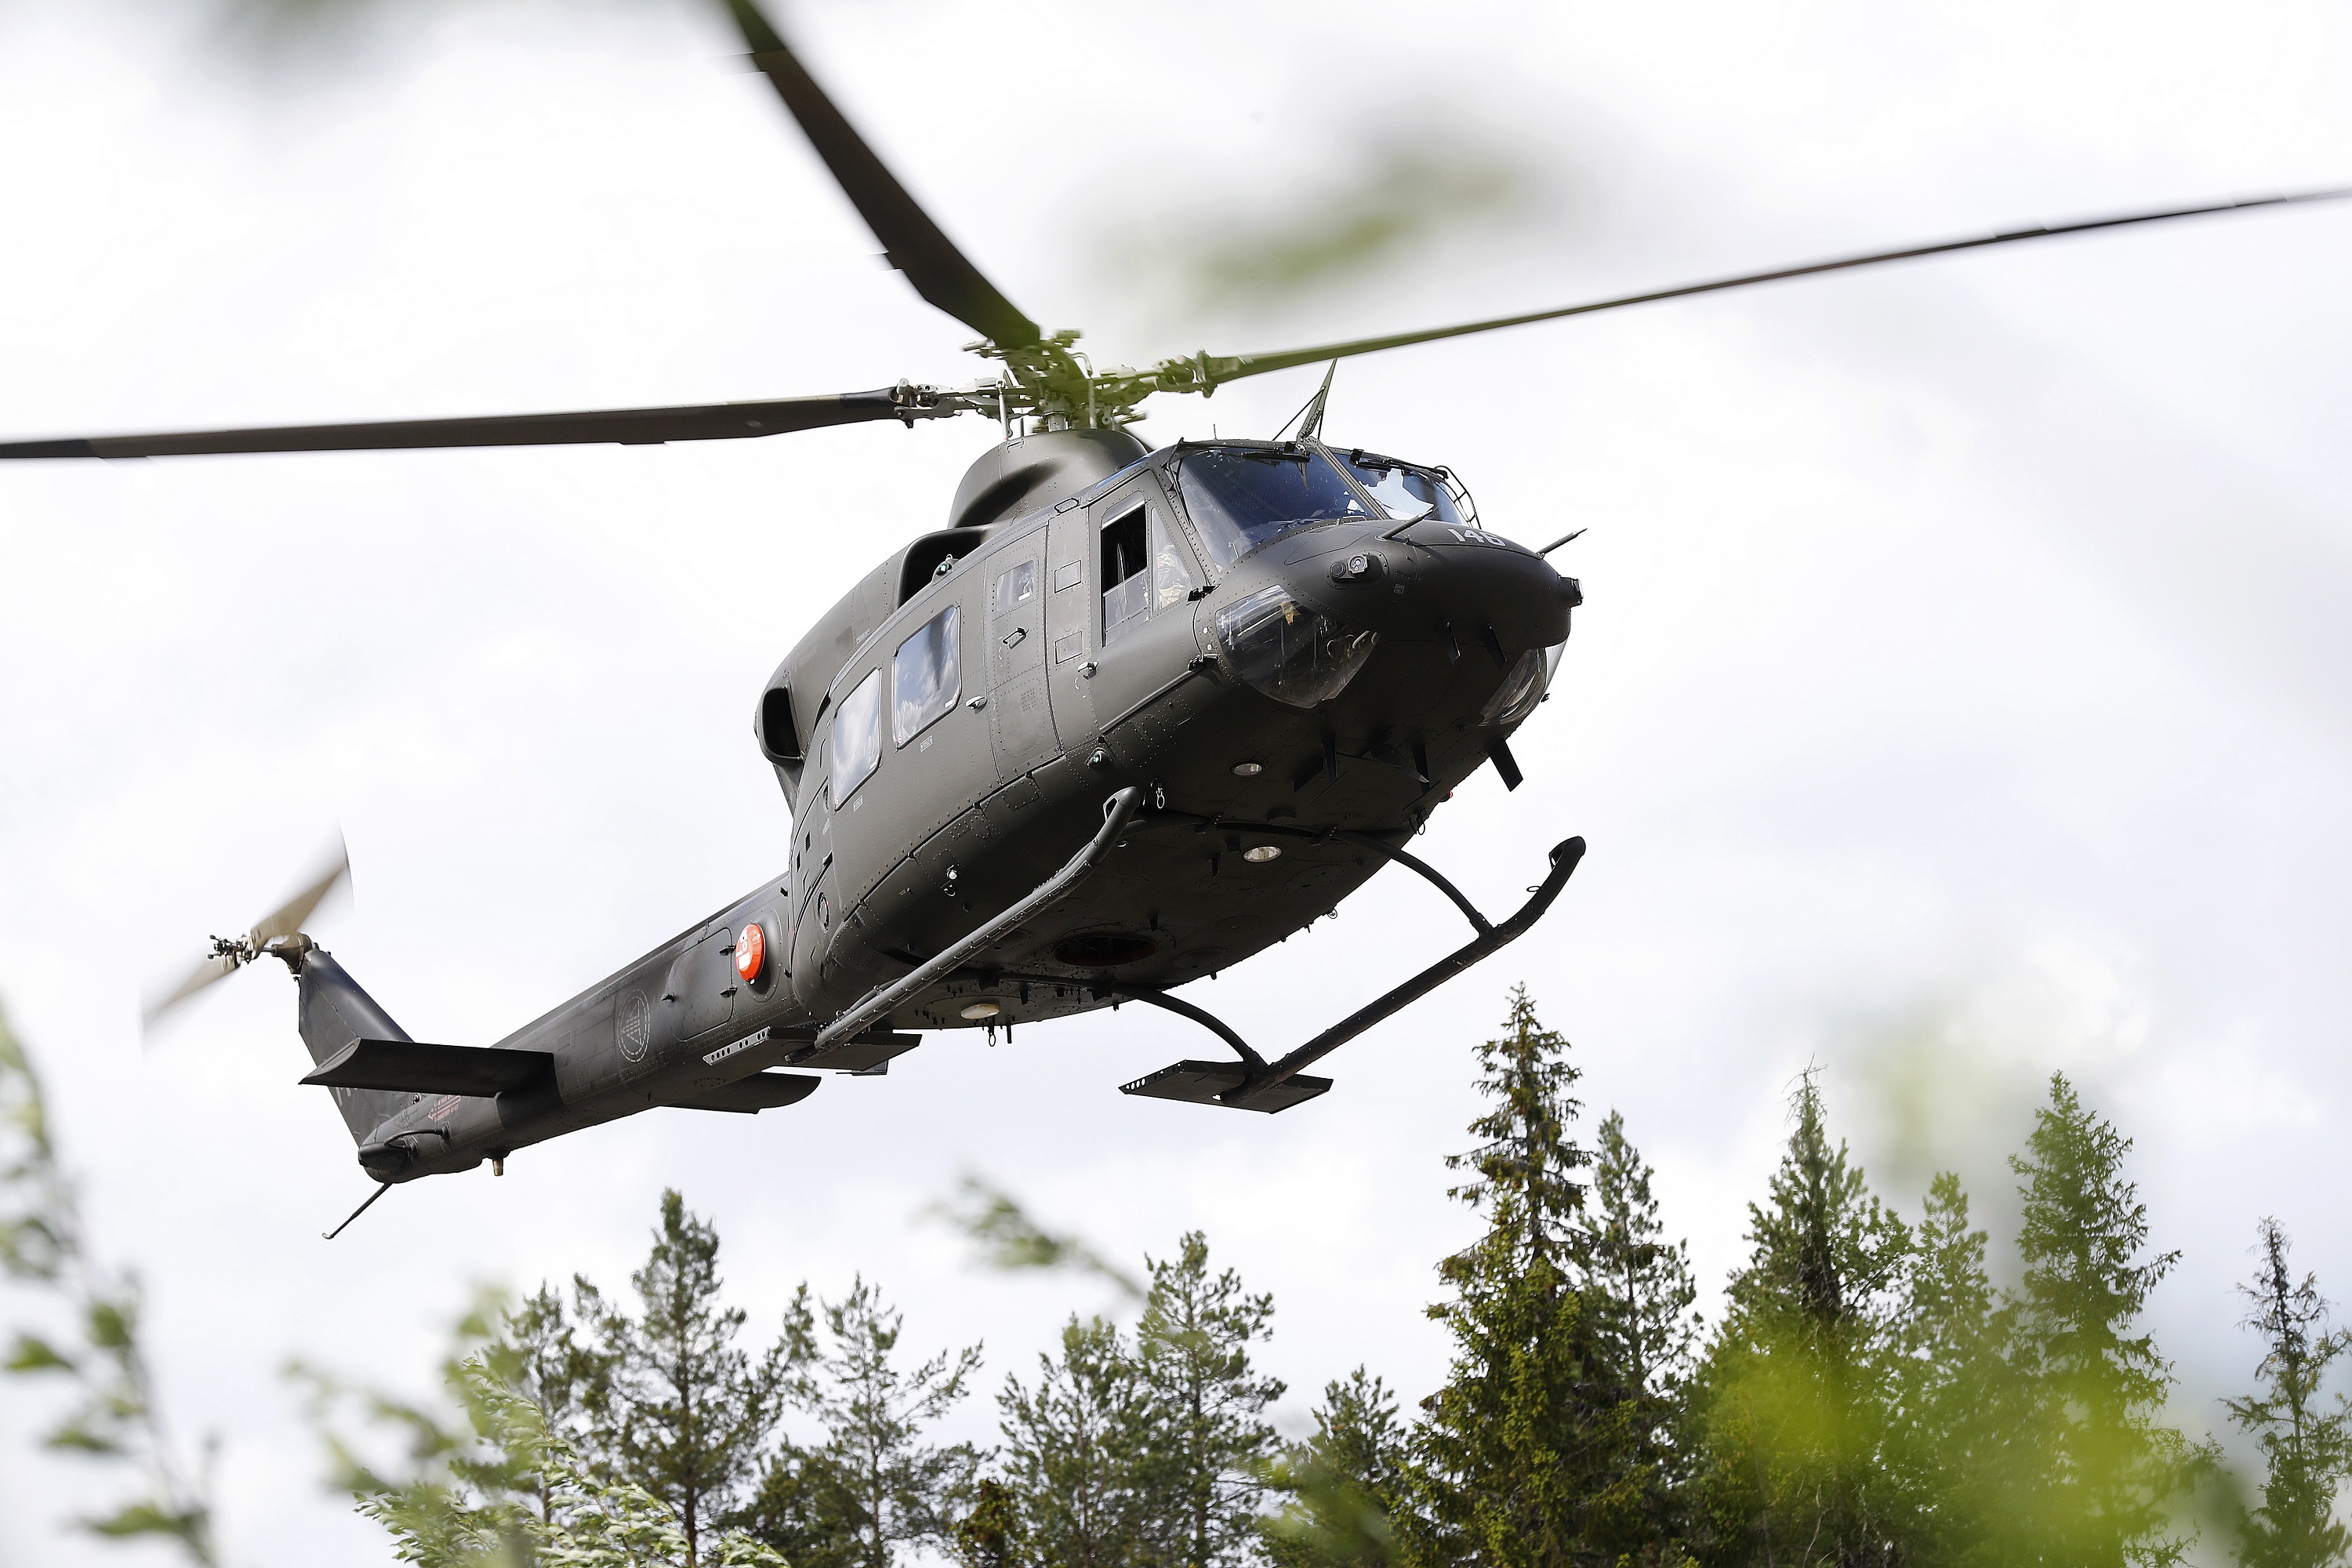 A Bell 412 helicopter from the Norwegian Special Forces. Credit: Torbjørn Kjosvold/ Forsvaret